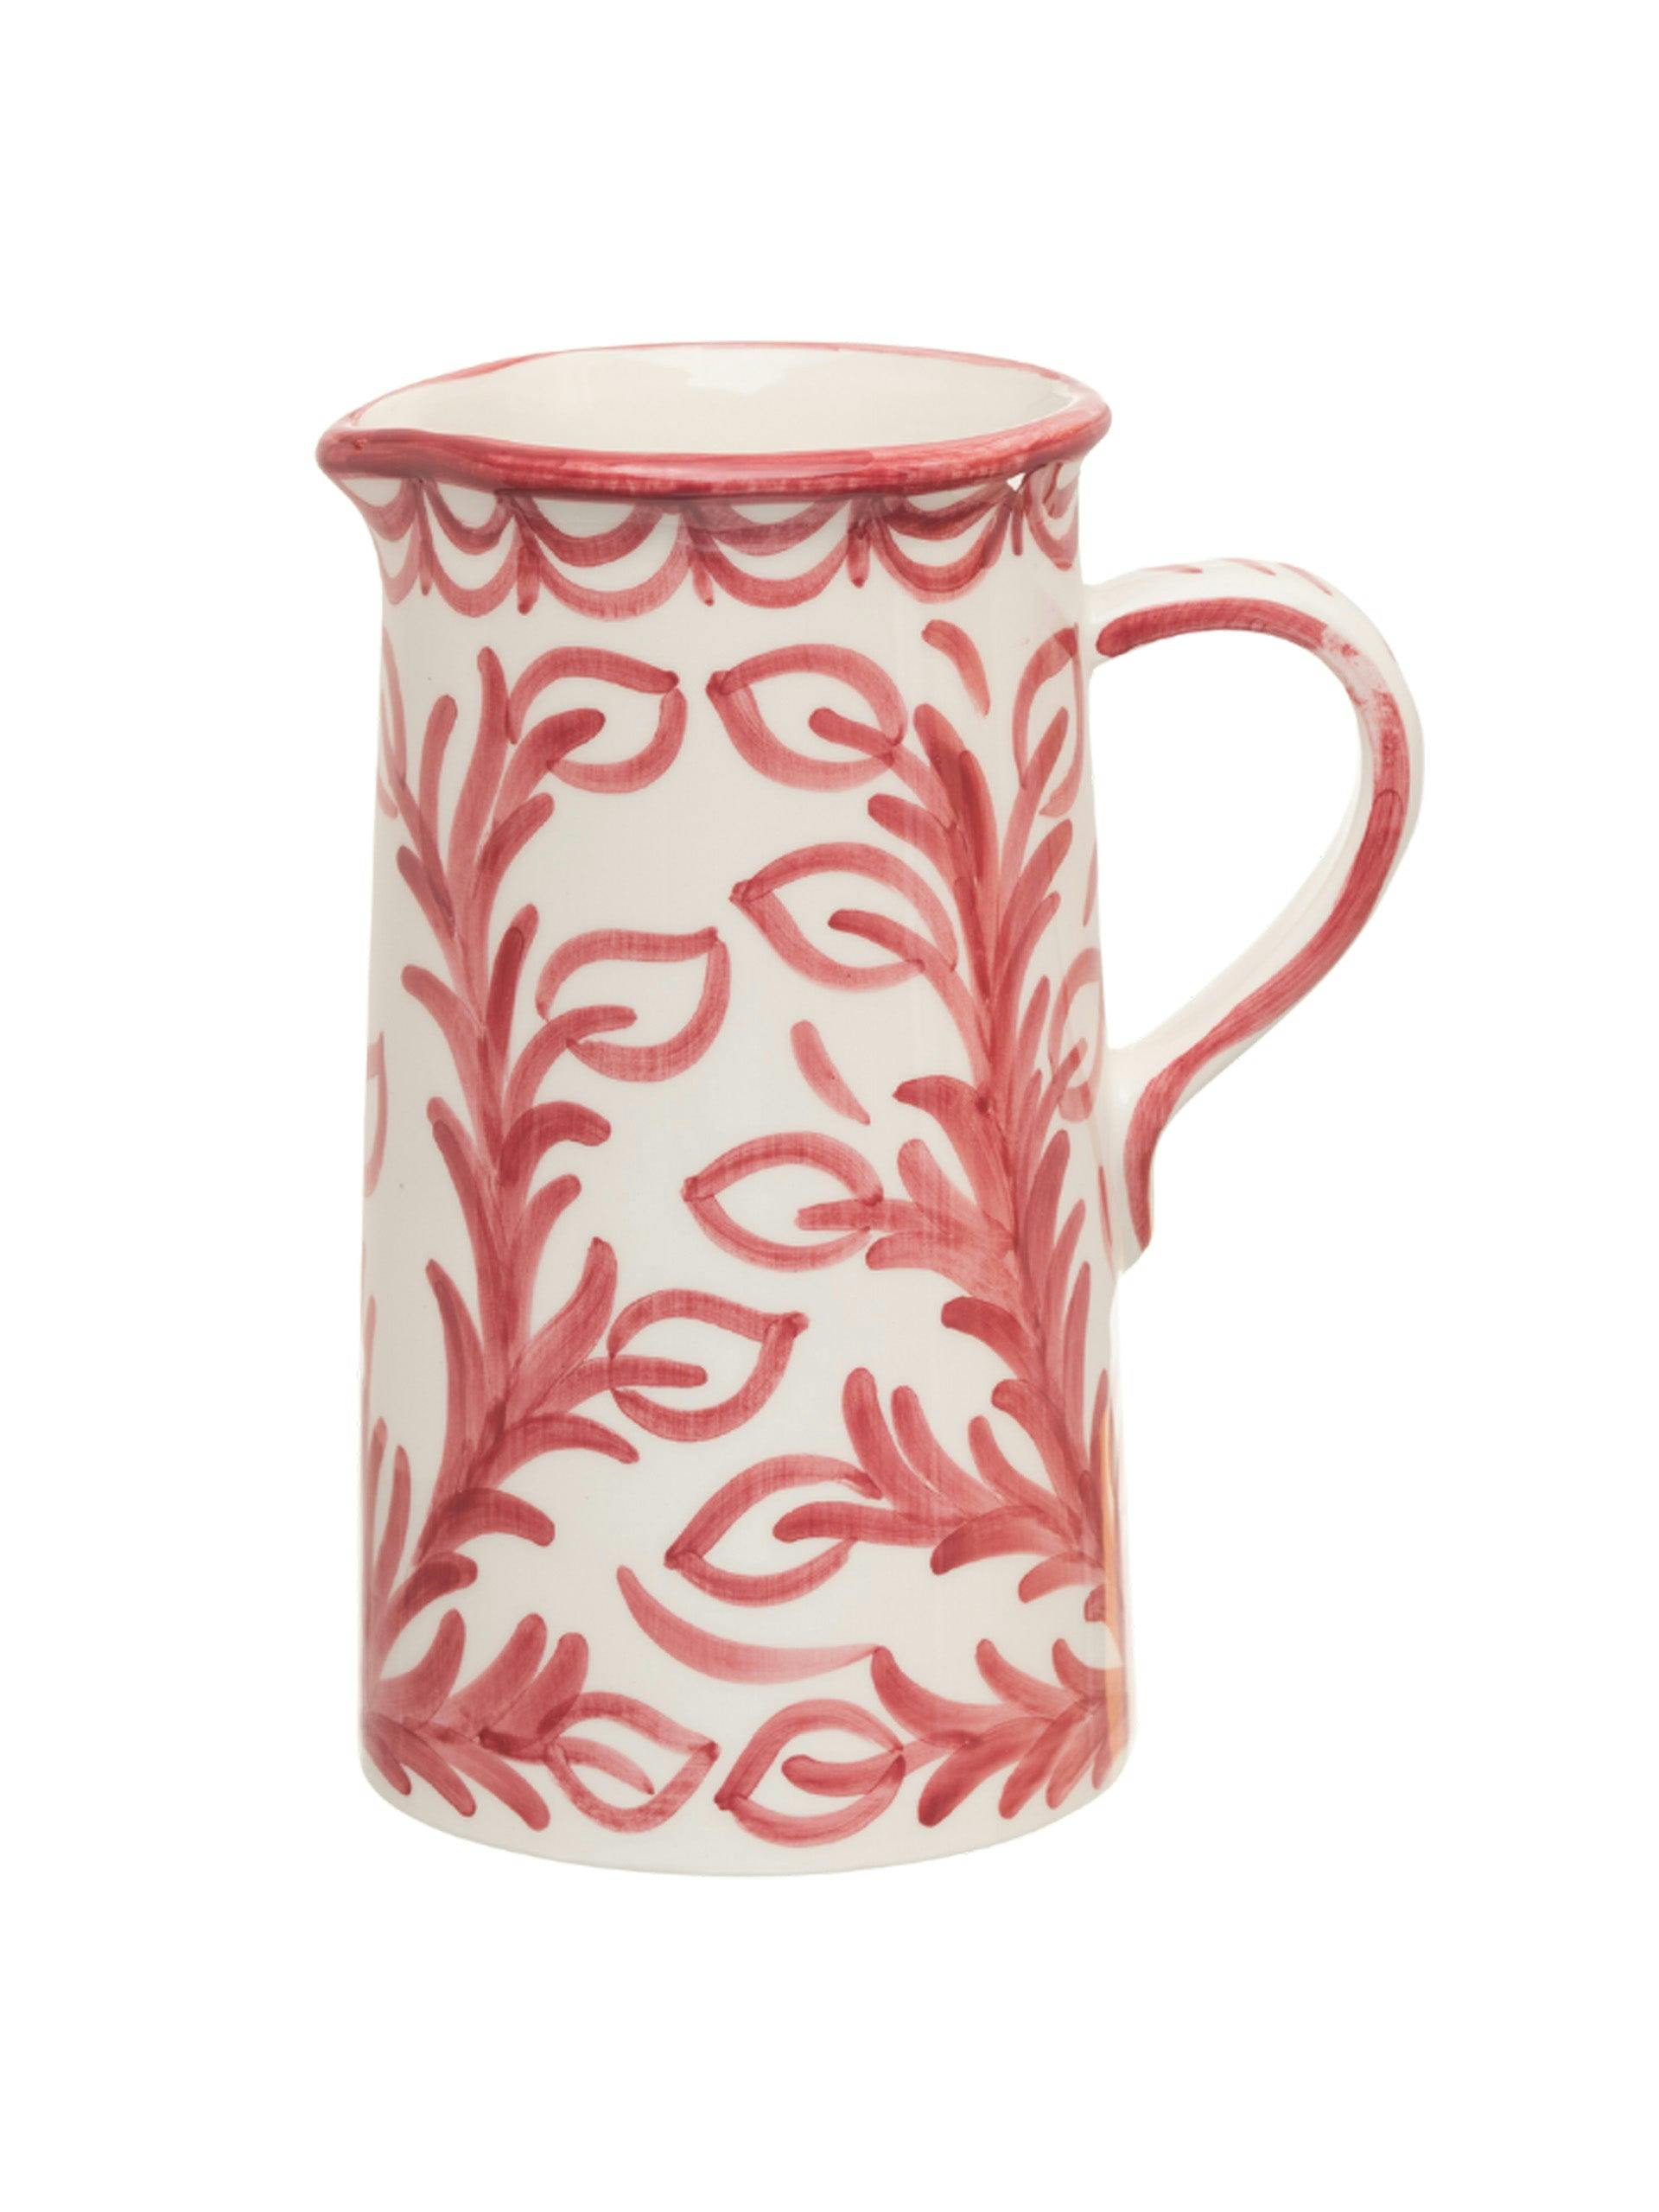 Large pink jug